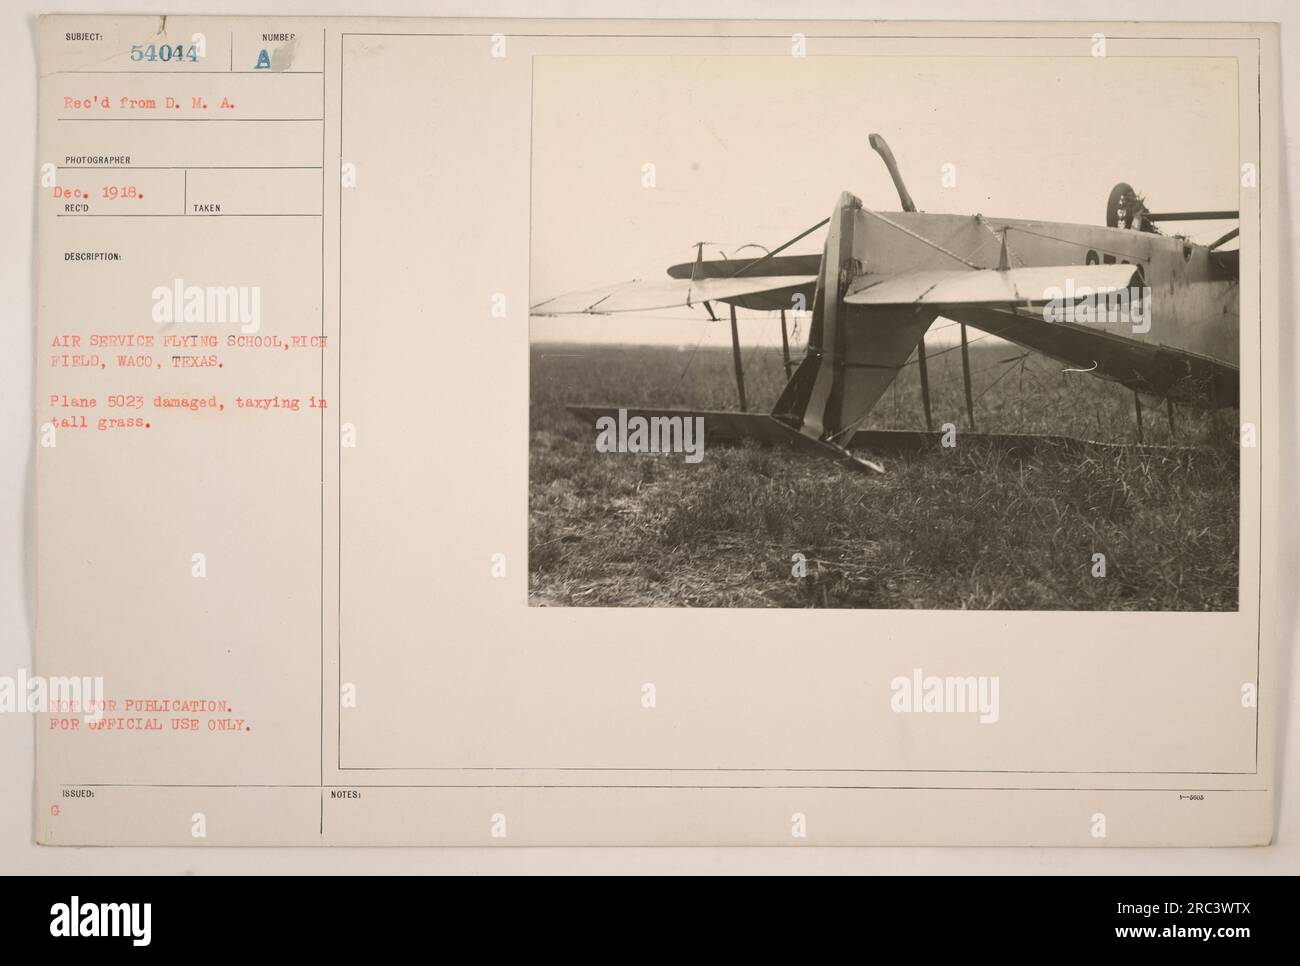 Image de l'école de vol Air Service à Rich Field à Waco, Texas. La photo a capturé l'avion 5023 endommagé alors qu'il roulait dans de hautes herbes. La photographie a été reçue du photographe D. M. A. en décembre 1918. Il est marqué « NON DESTINÉ À LA PUBLICATION » et « À USAGE OFFICIEL UNIQUEMENT ». Banque D'Images